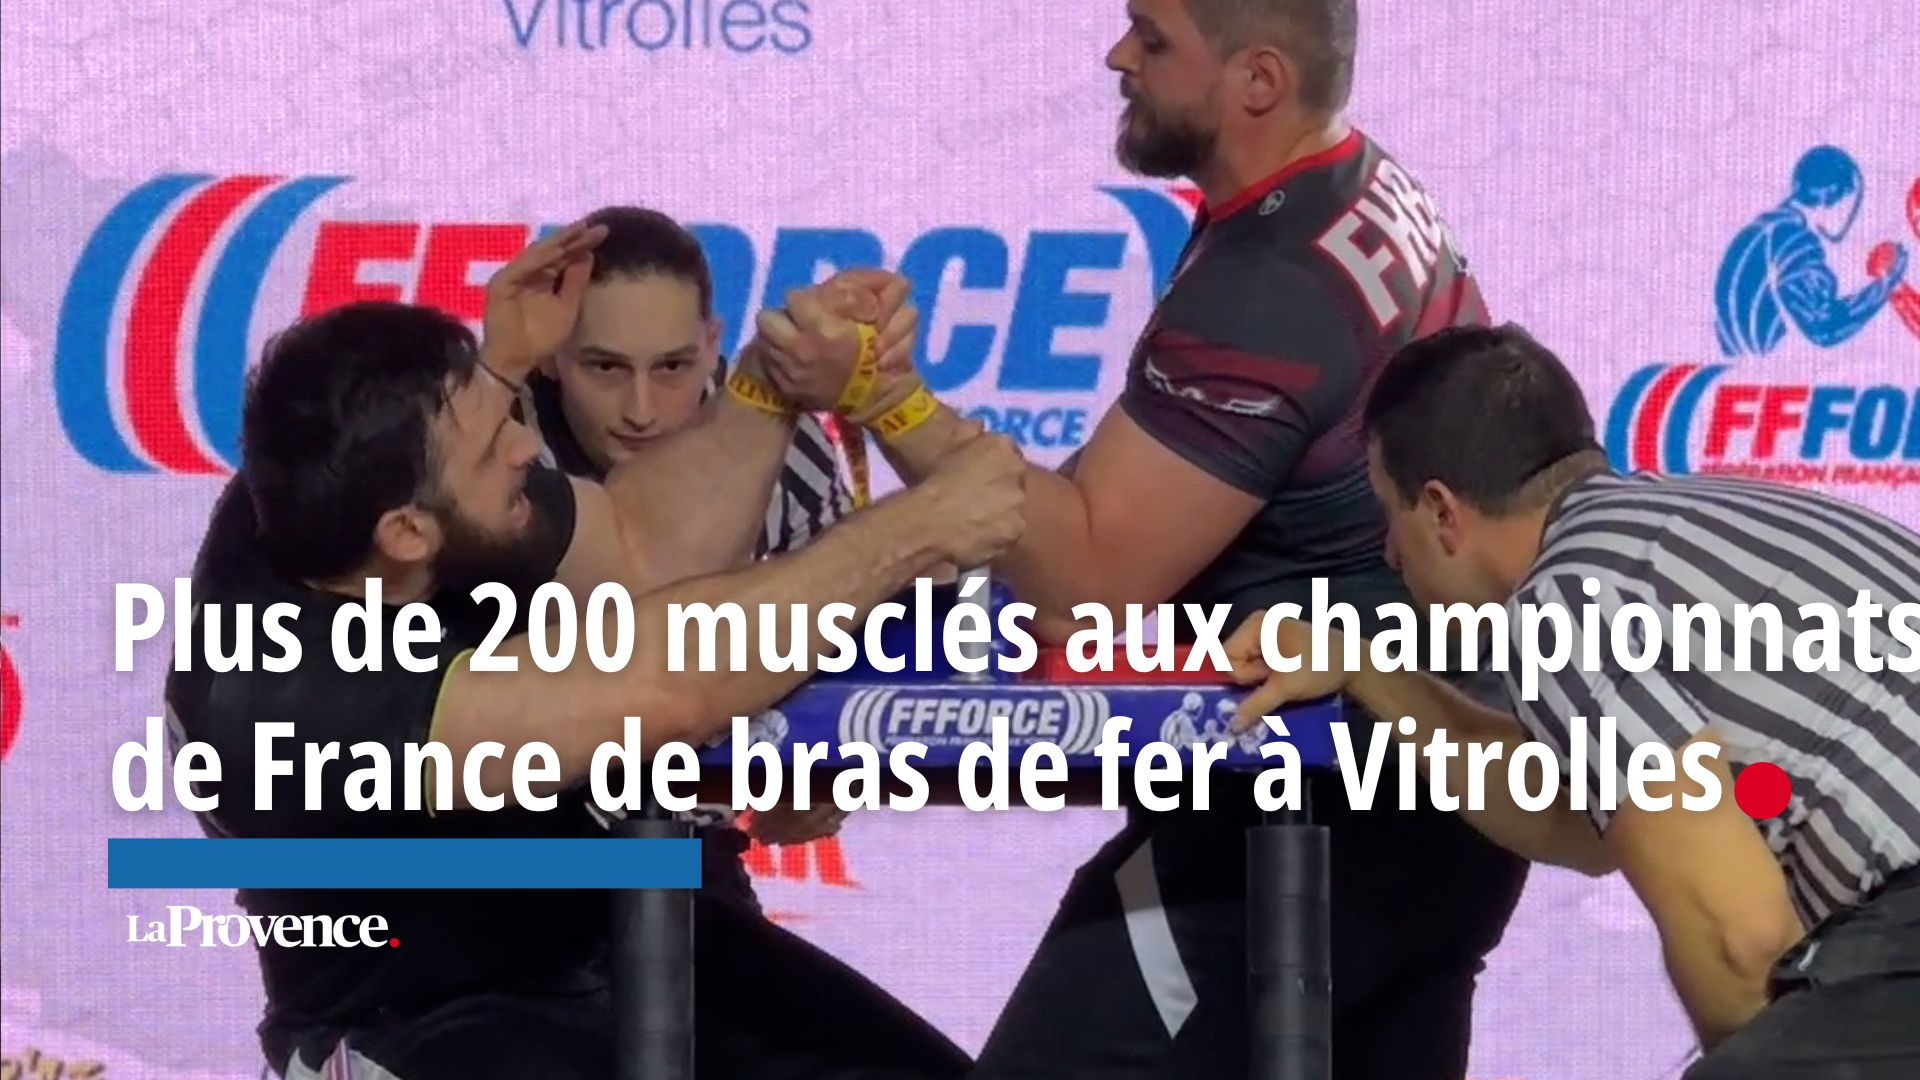 , Du rock, des tatoos,&#8230;Plus de 200 musclés au championnats de France de bras de fer à Vitrolles